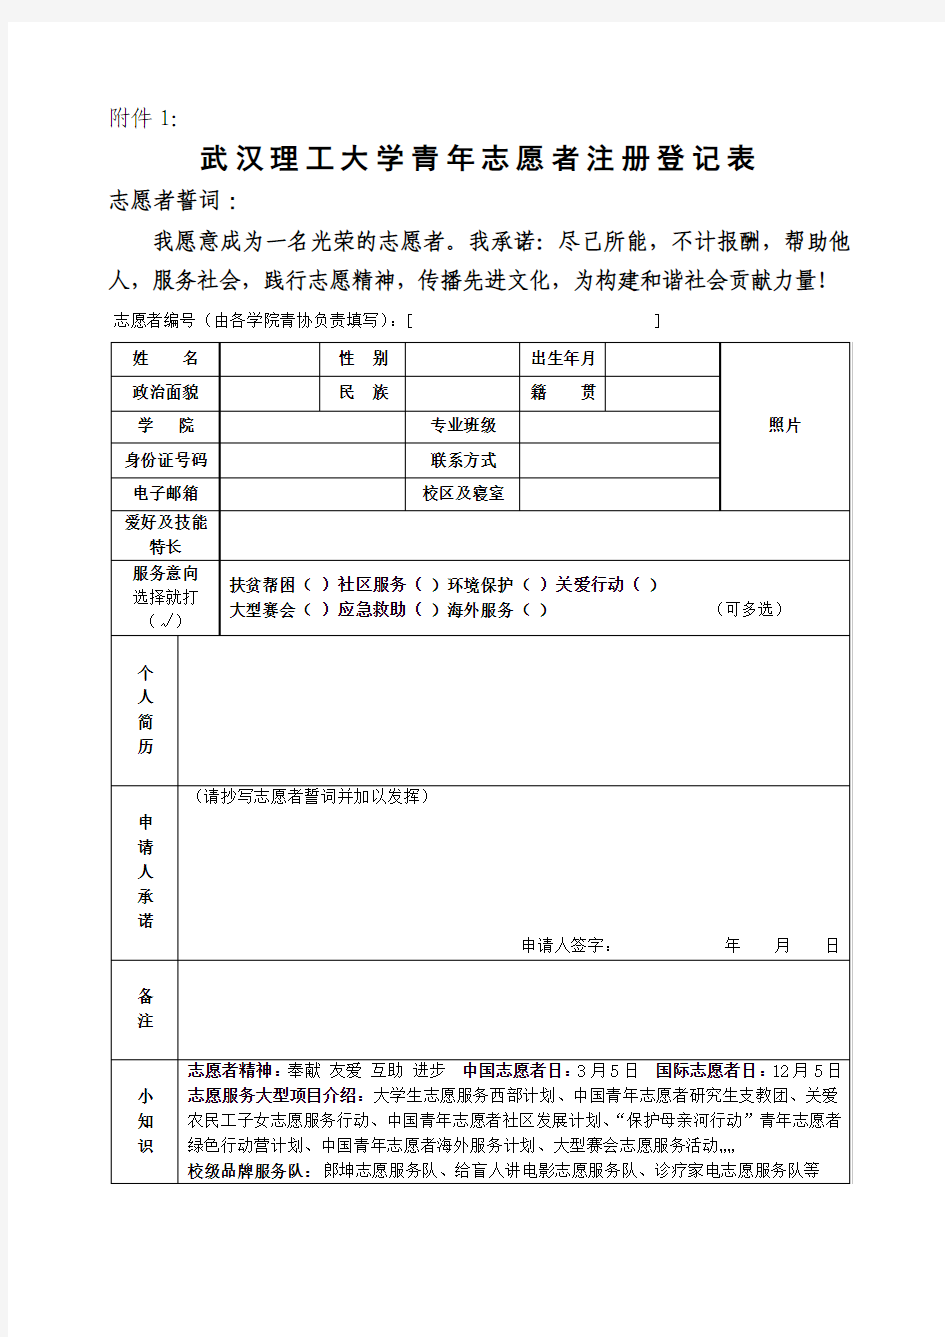 武汉理工大学青年志愿者注册登记表